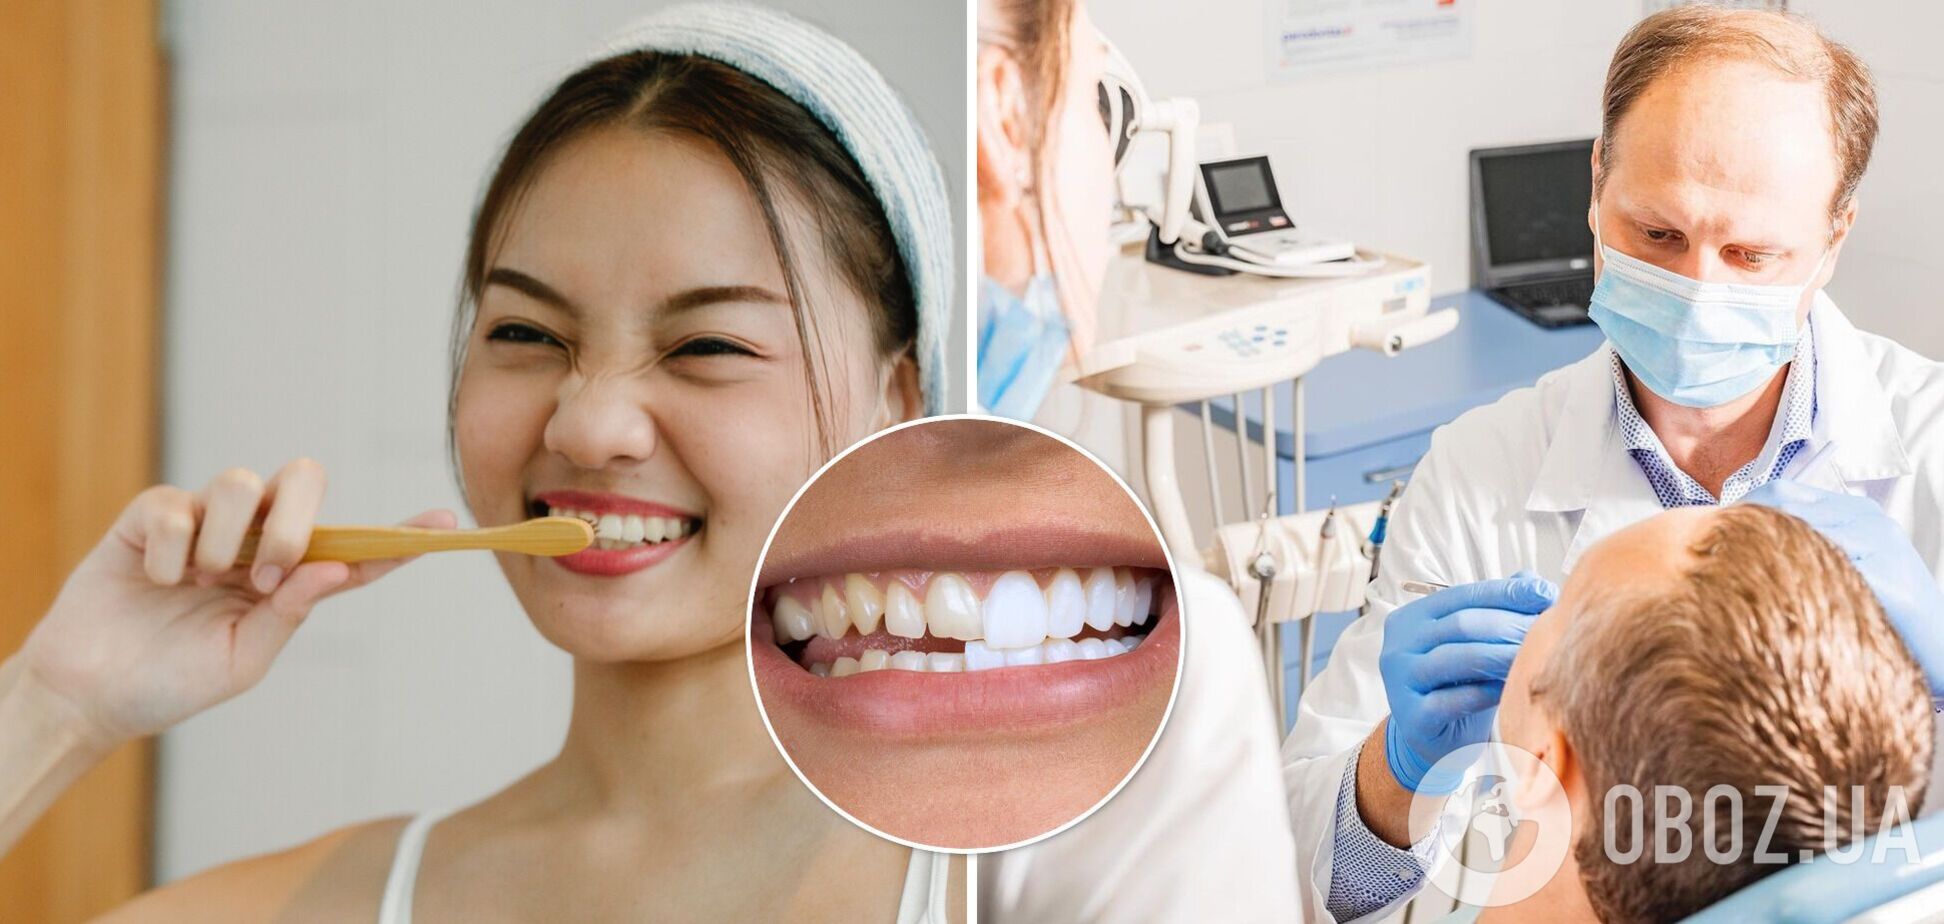 Вініри чи свої зуби: стоматолог назвав плюси й мінуси голлівудської посмішки